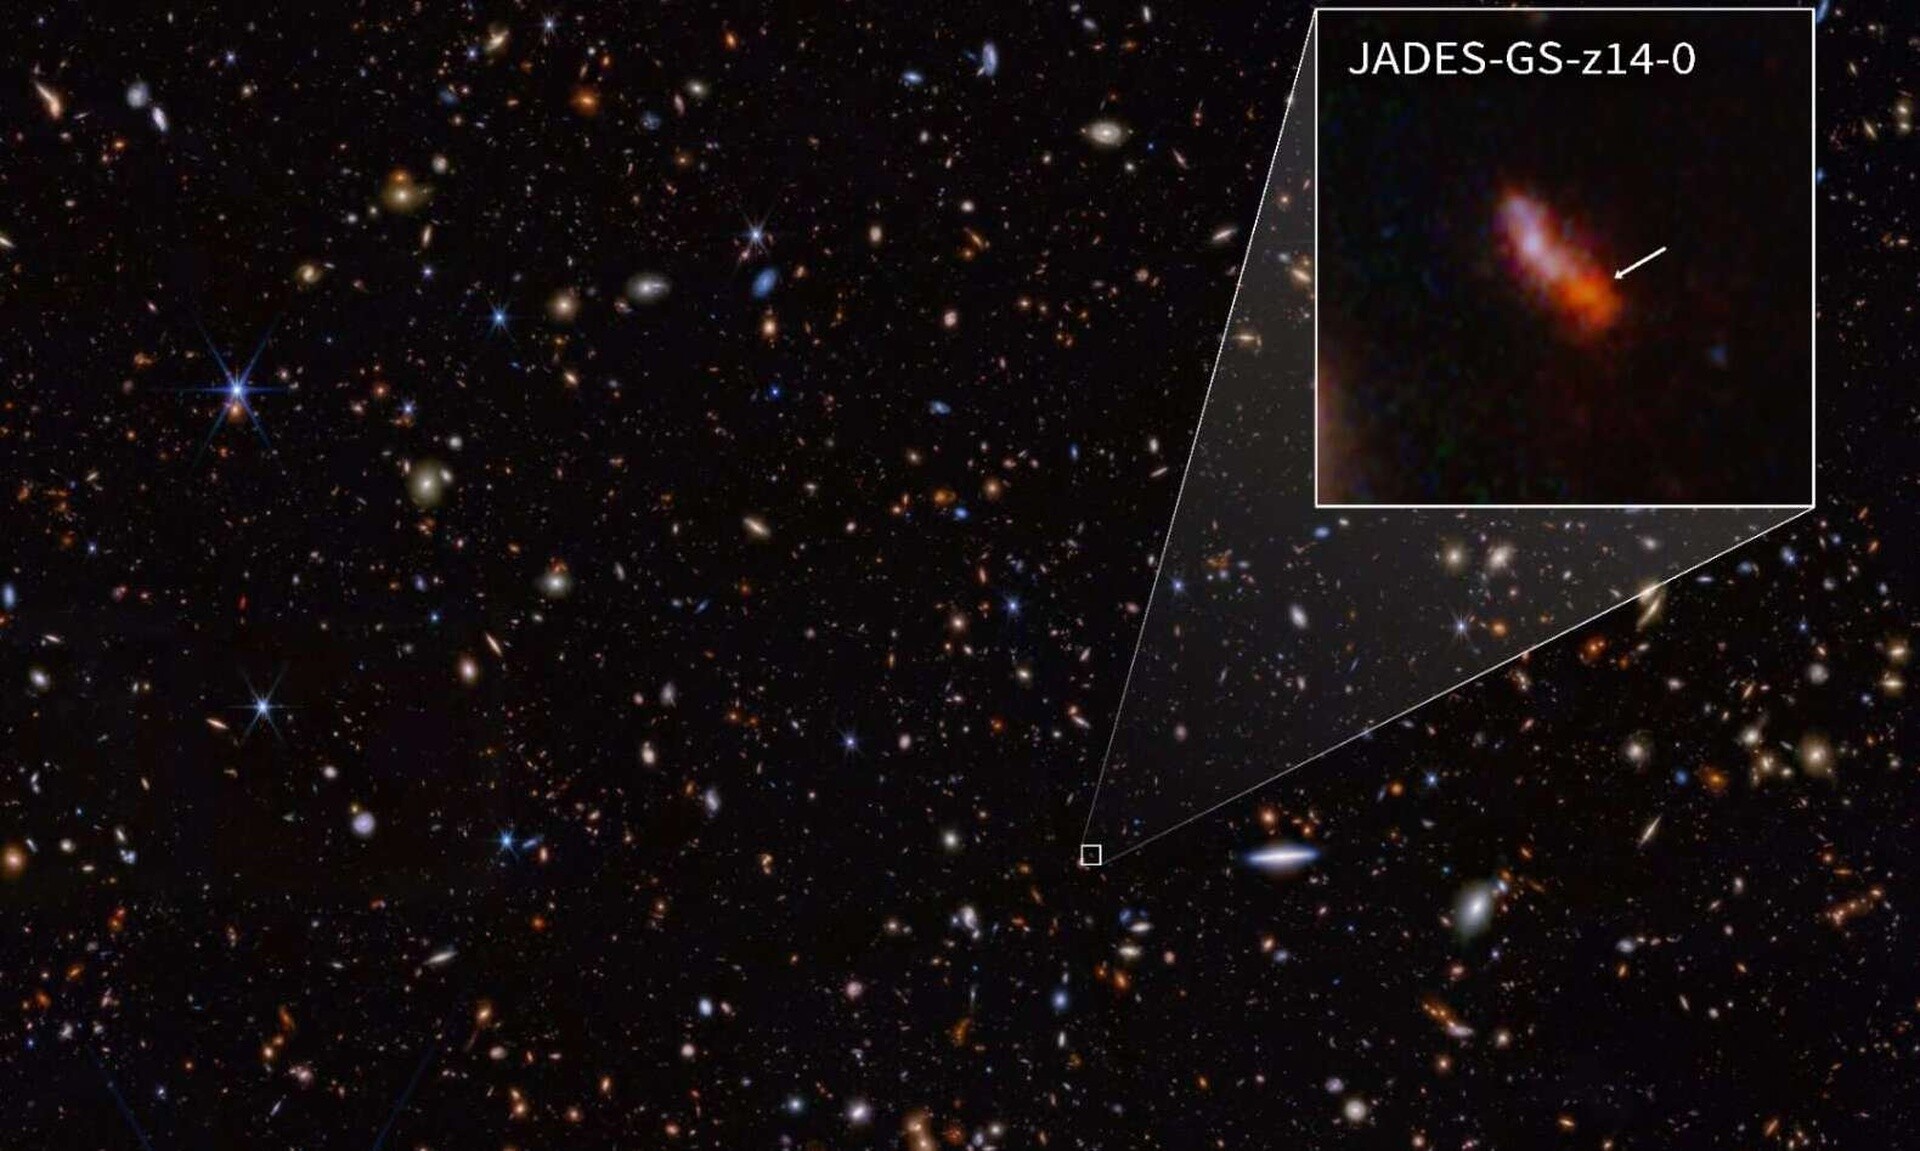 Απίστευτη ανακάλυψη: Το διαστημικό τηλεσκόπιο James Webb εντόπισε τον πιο μακρινό γνωστό γαλαξία